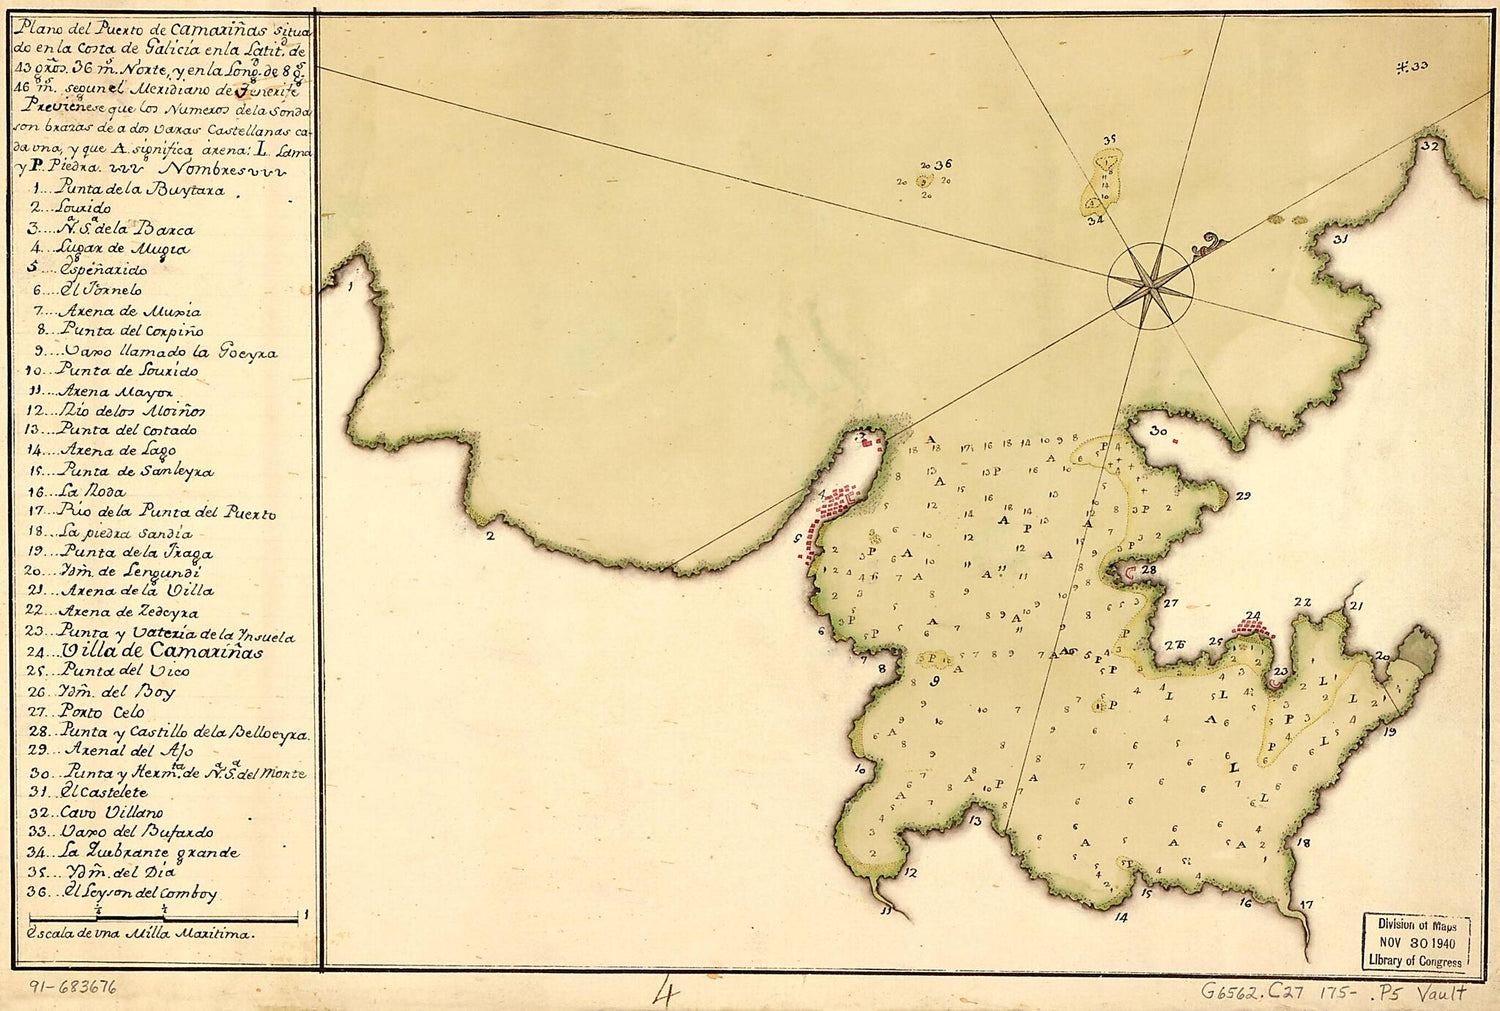 This old map of Plano Del Puerto De Camariñas Situado En La Costa De Galicia En La Latitd. De 43 Gros. 36 Ms. Norte Y En La Longd. De 8 Gs. 46 Ms. Segun El Meridiano De Tenerife from 1750 was created by  in 1750